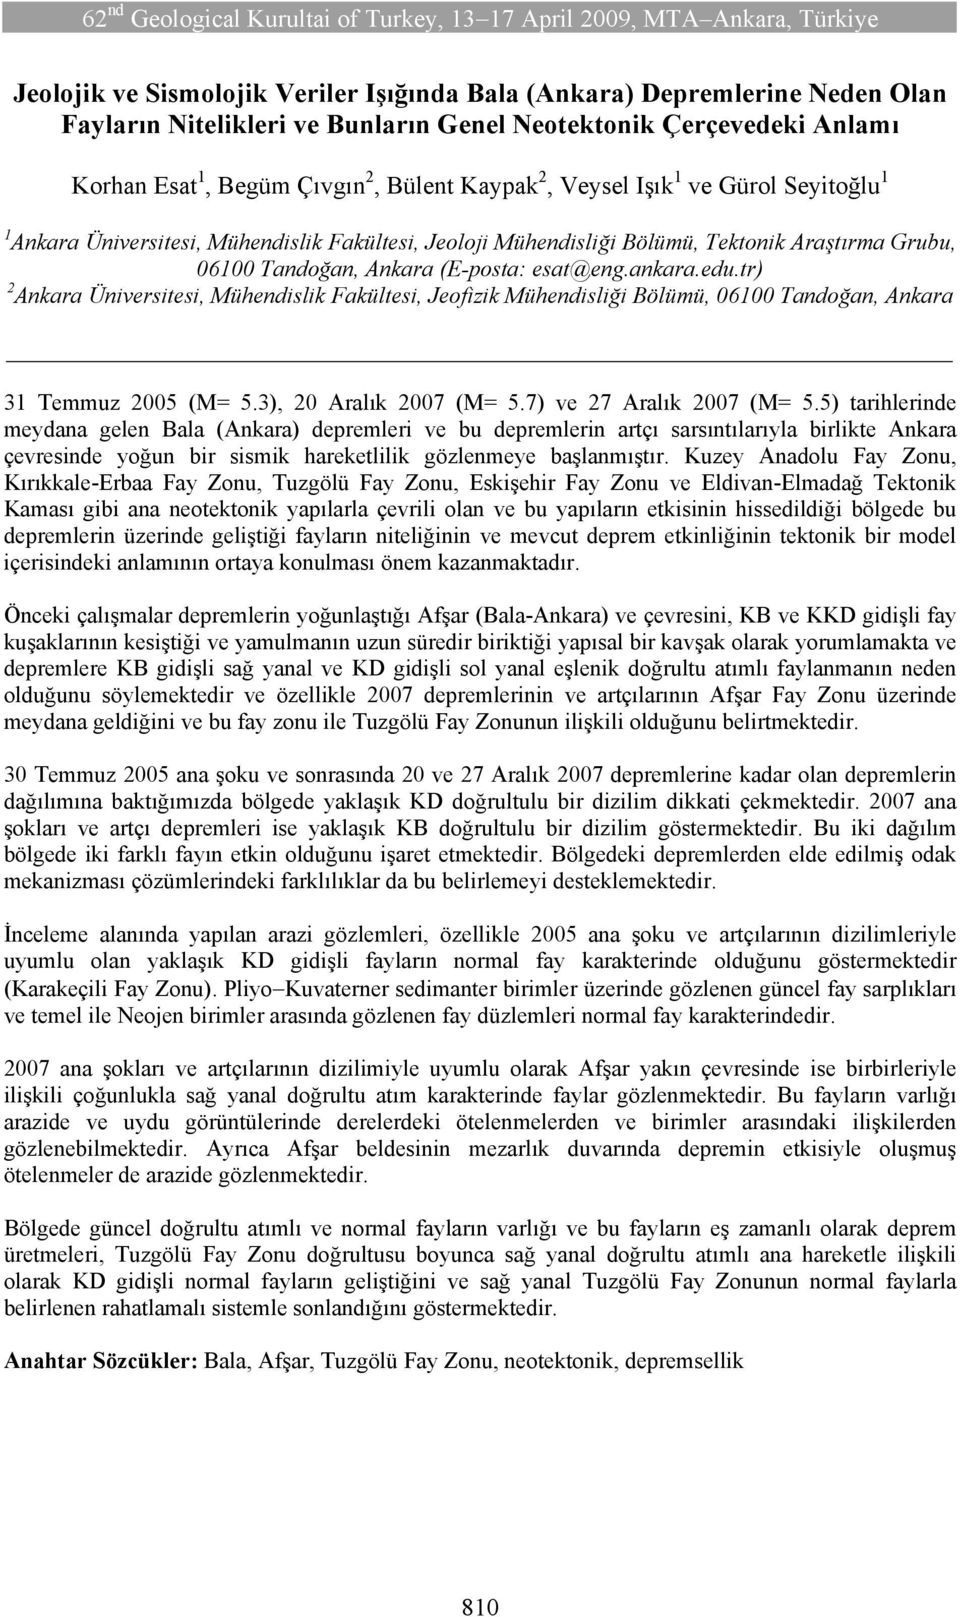 tr) 2 Ankara Üniversitesi, Mühendislik Fakültesi, Jeofizik Mühendisliği Bölümü, 06100 Tandoğan, Ankara 31 Temmuz 2005 (M= 5.3), 20 Aralık 2007 (M= 5.7) ve 27 Aralık 2007 (M= 5.